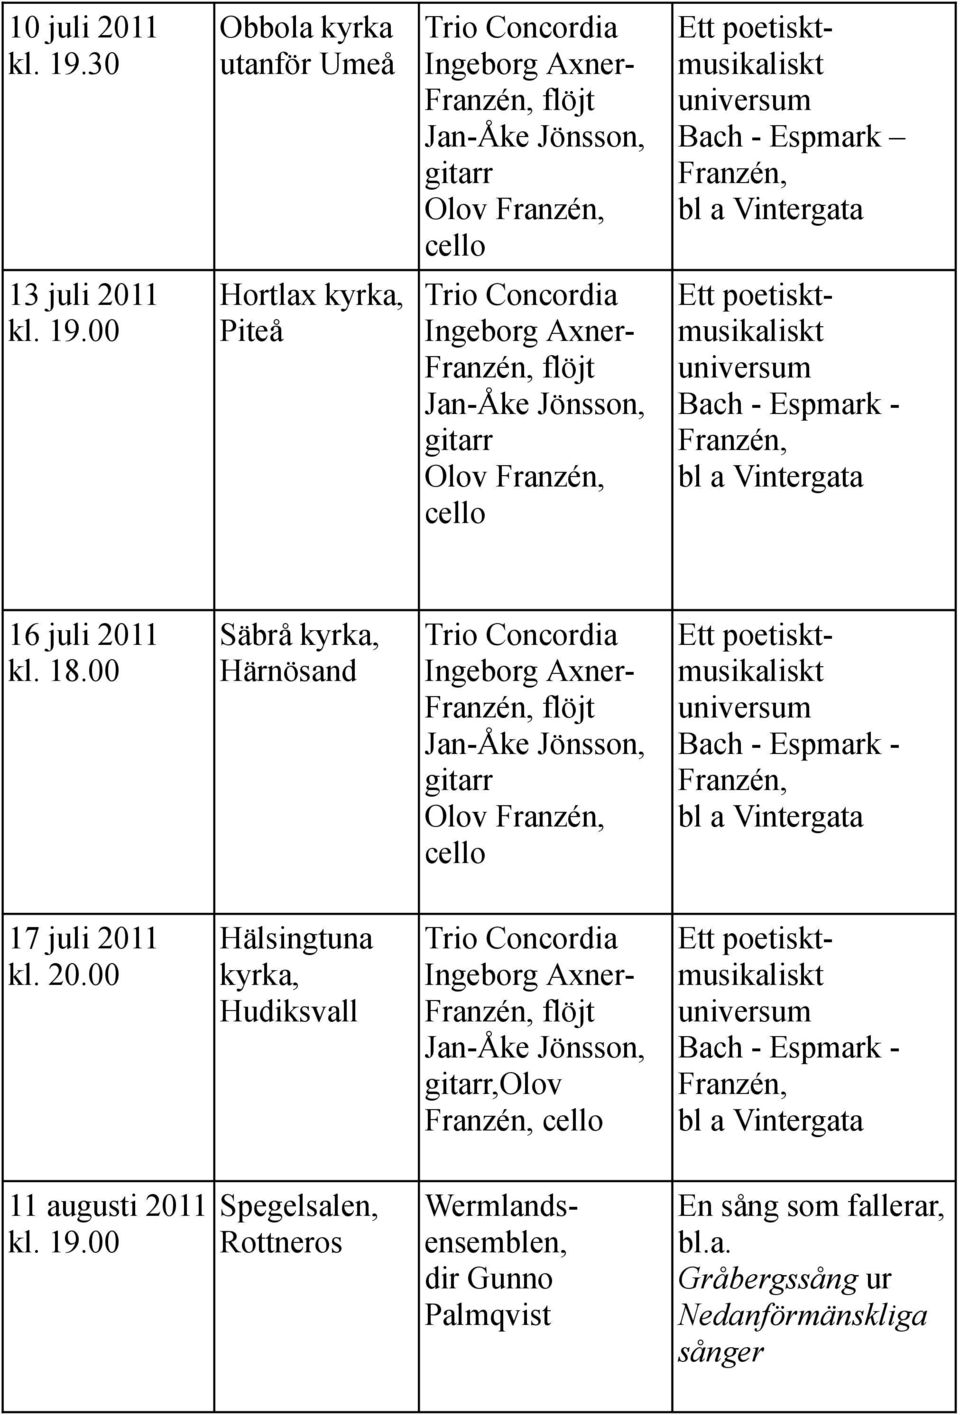 1 kl. 20.00 Hälsingtuna, Hudiksvall,Olov Franzén, Ett poetisktmusikaliskt universum Bach - Espmark - Franzén, bl a Vintergata 11 augusti 2011 kl. 19.